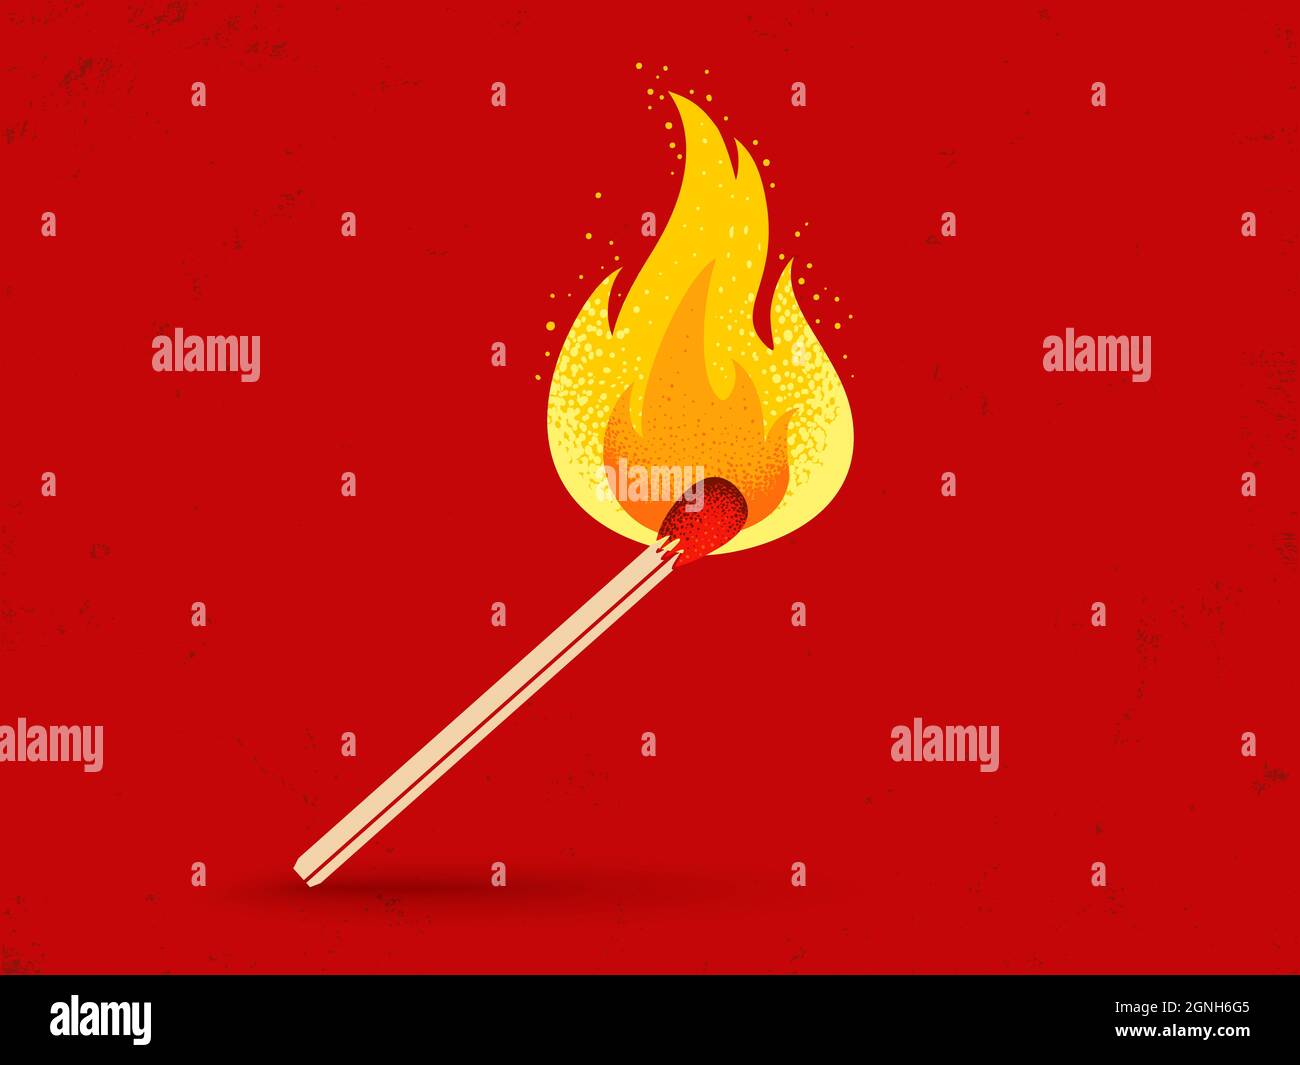 Illustration vectorielle rétro d'un match avec feu sur fond rouge vintage. Symbole vintage assorti à la flamme Illustration de Vecteur